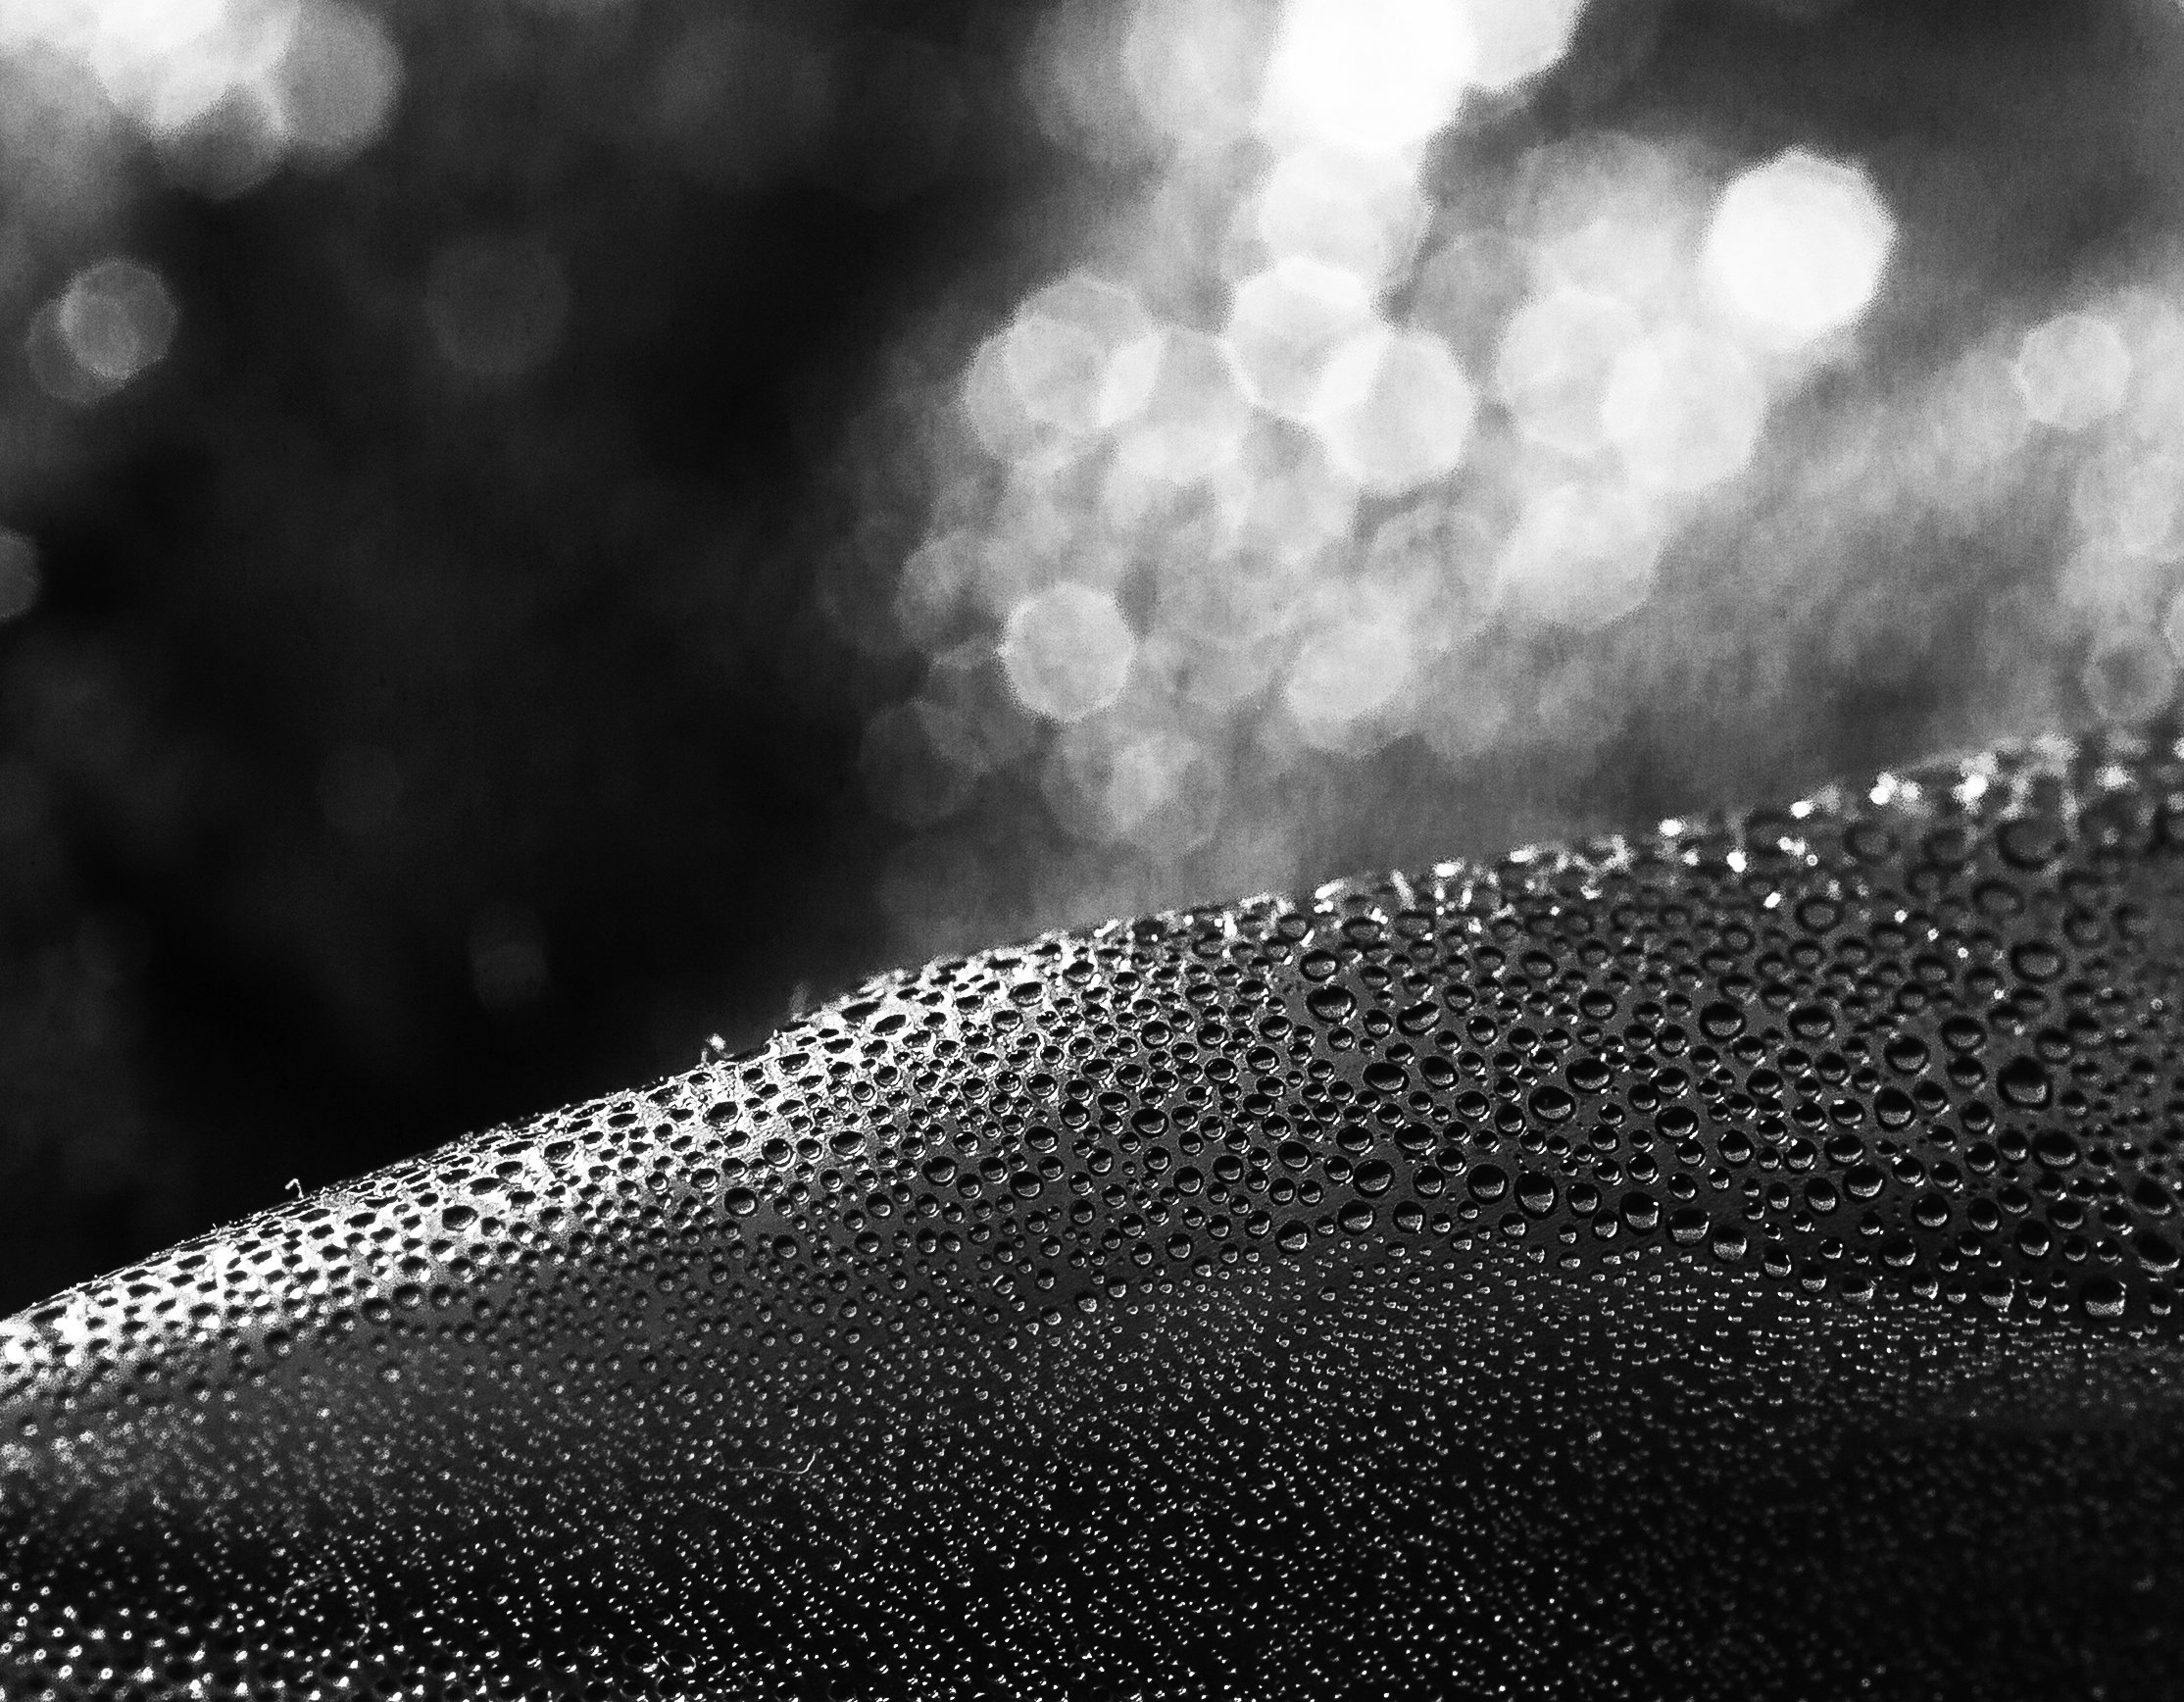 макро,капли, конденсат,влага,вода,черно-белое фото, Александр Кожухов